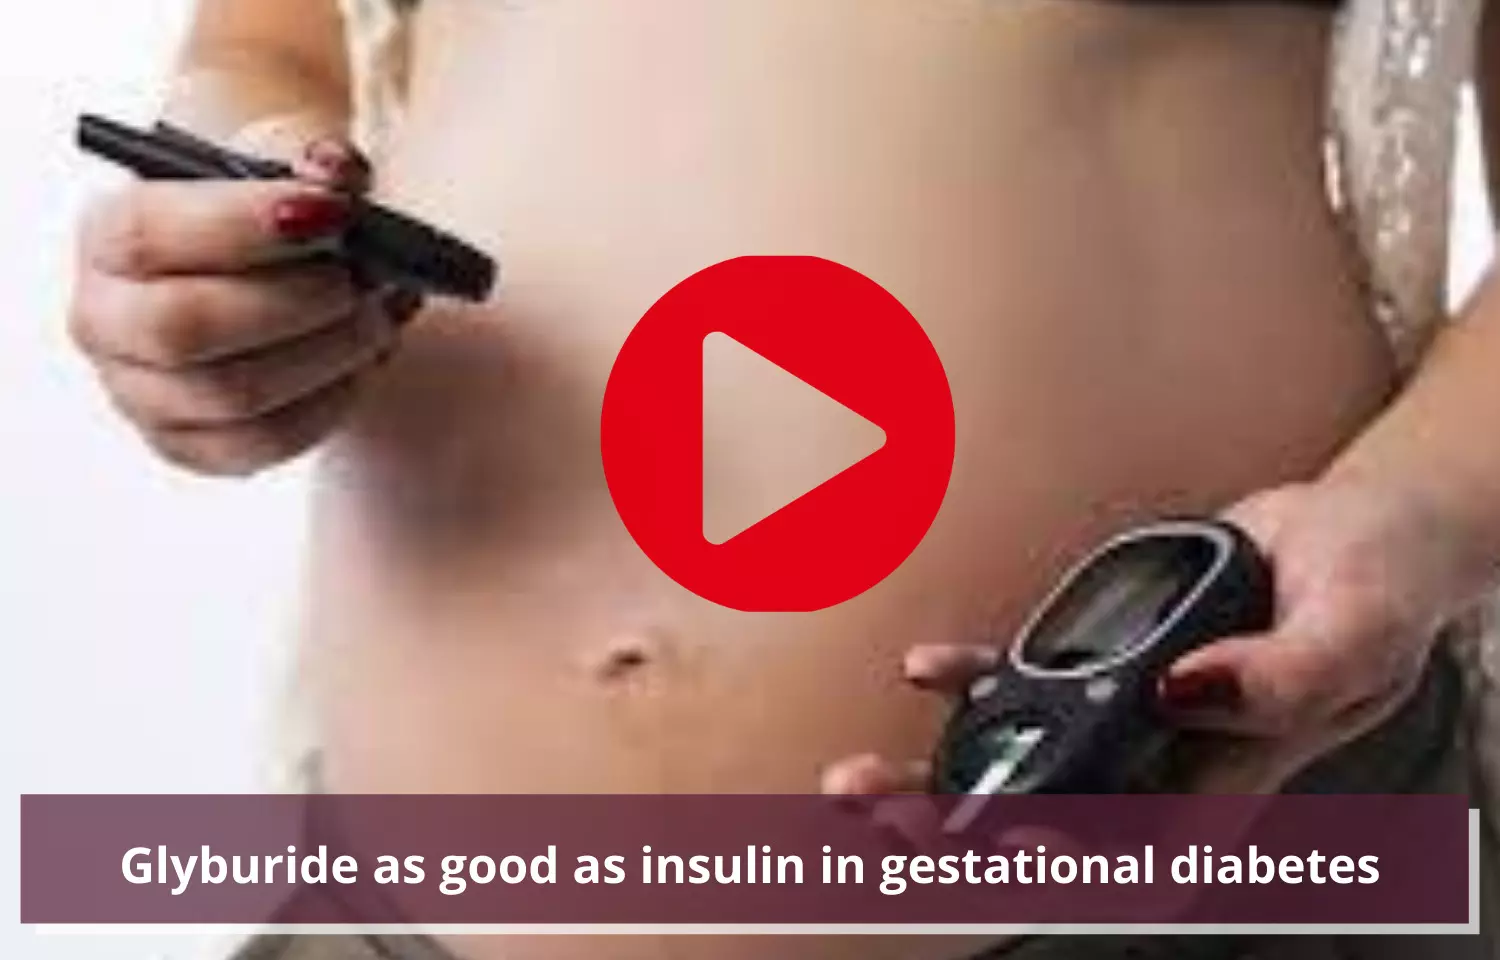 Journal Club - Glyburide as good as insulin in gestational diabetes